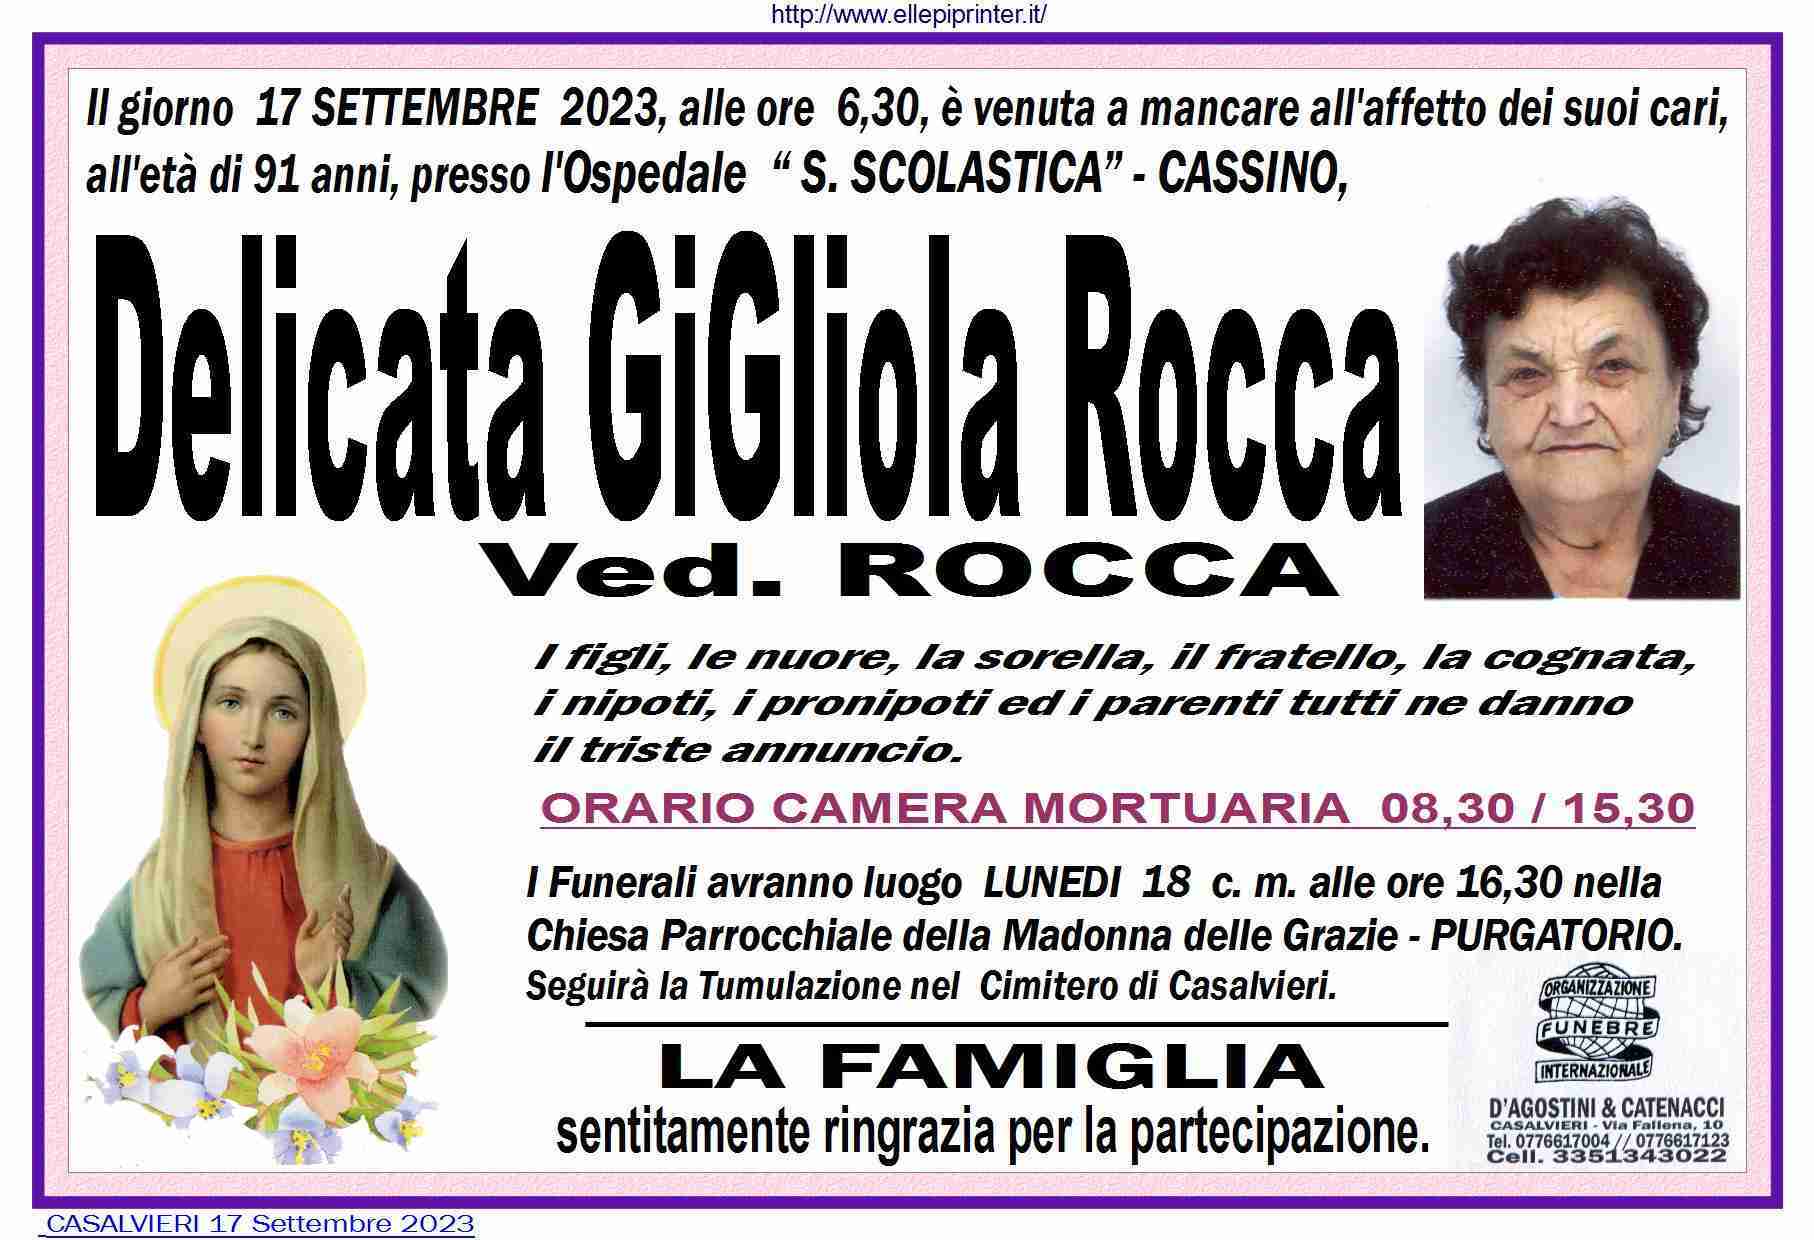 Delicata Gigliola Rocca